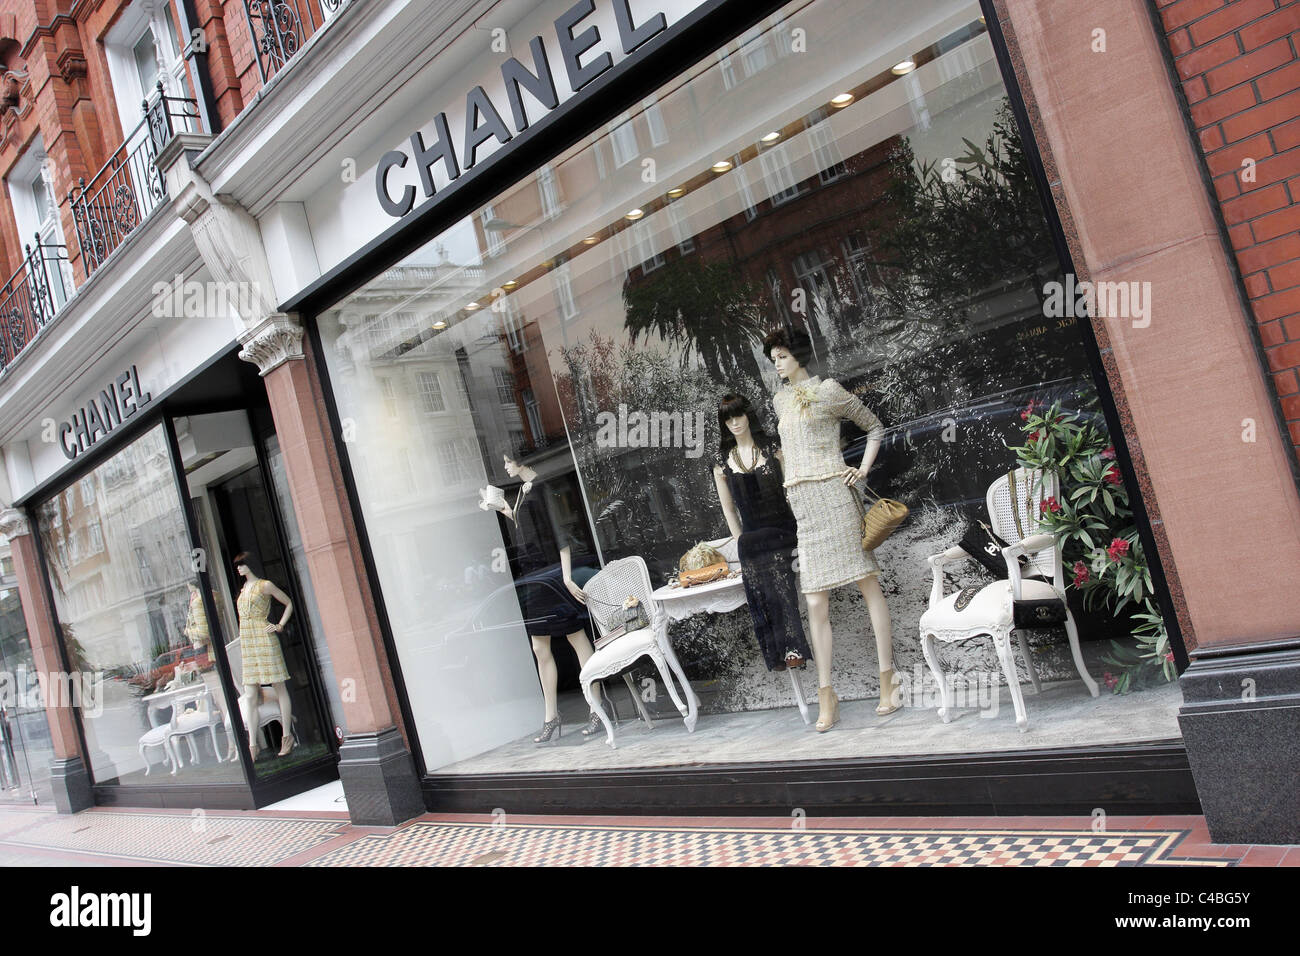 Chanel outlet immagini e fotografie stock ad alta risoluzione - Alamy